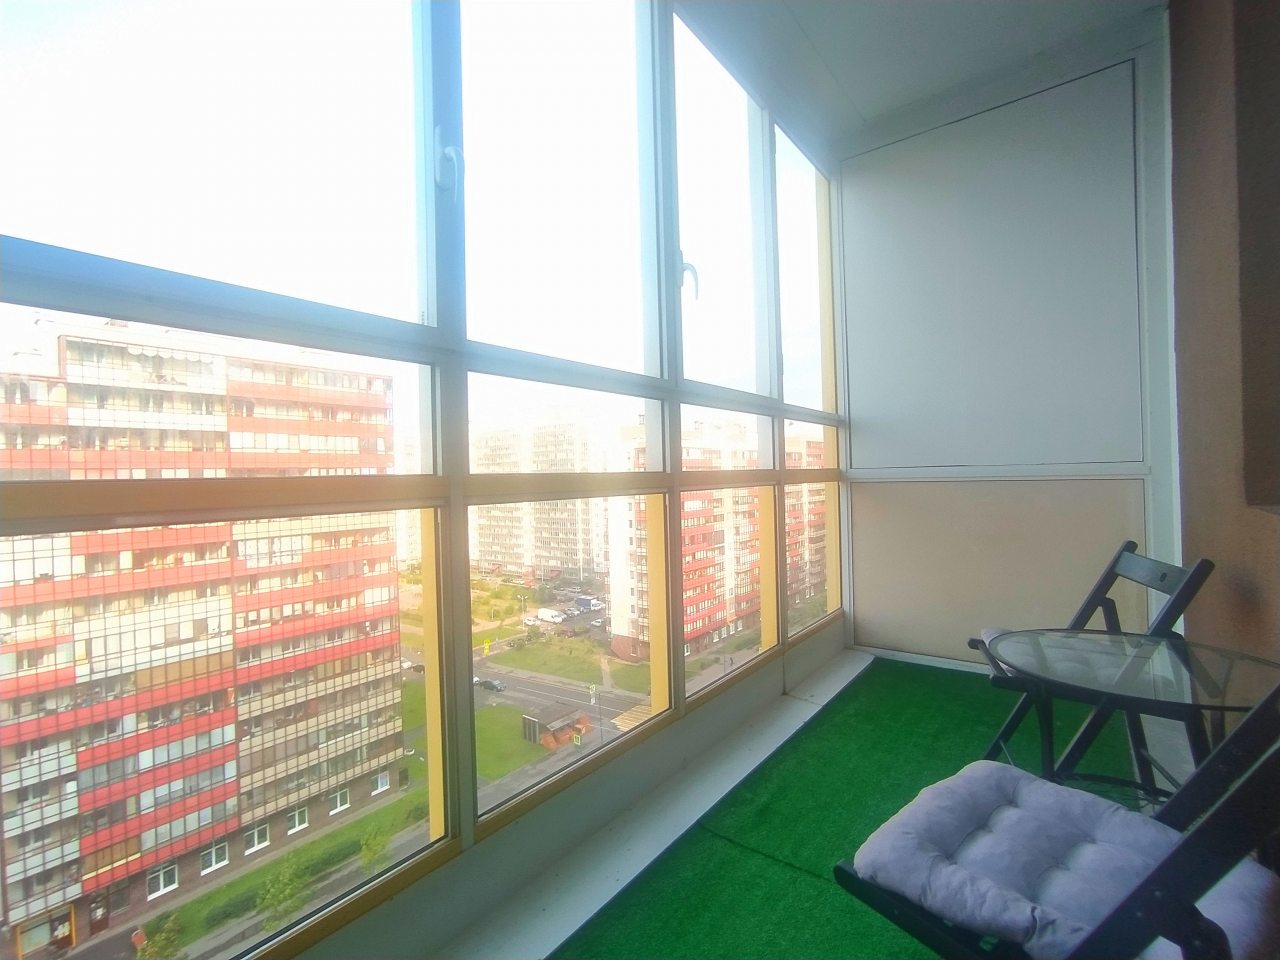 Апартаменты (Семейные с панорамным балконом), Апартаменты Квартира-студия 26 м2